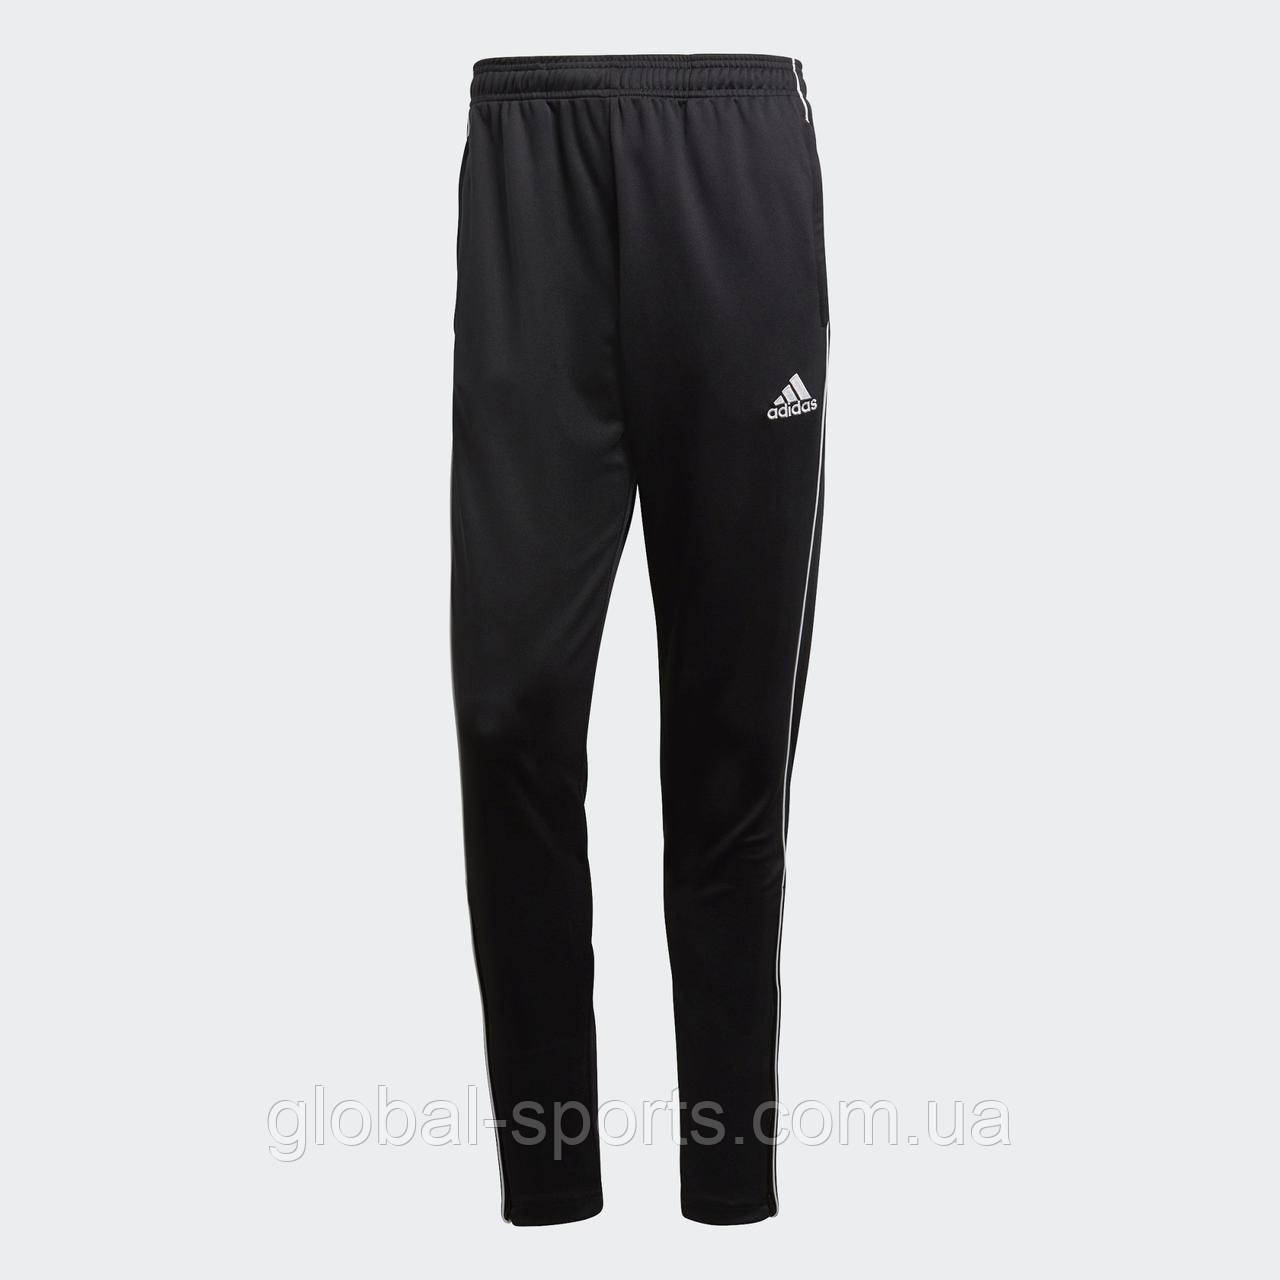 Чоловічі штани Adidas Core18 TRAINING (Артикул: CE9036) XS - S